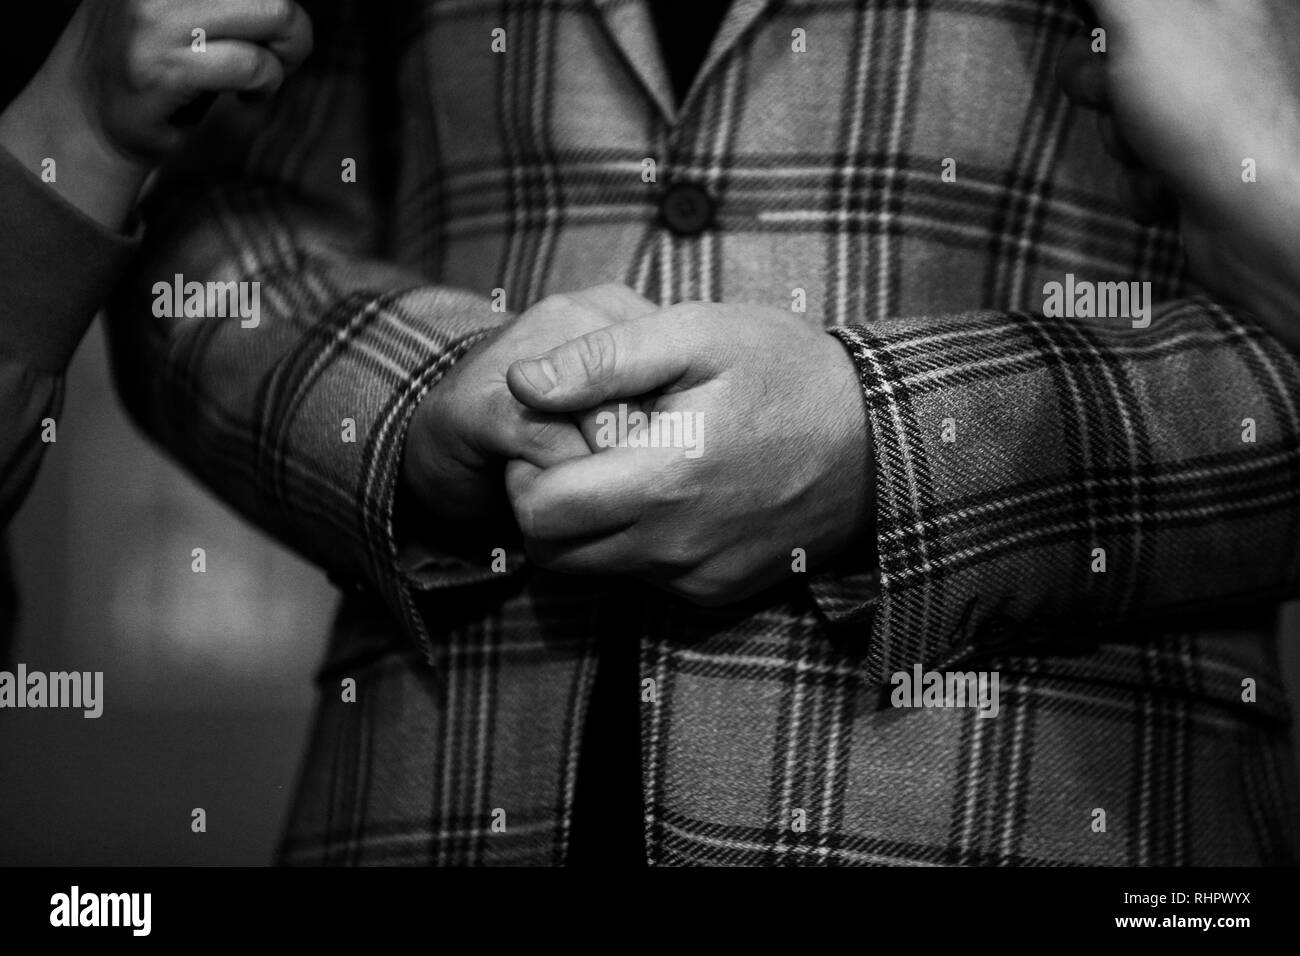 Immagine in bianco e nero con i dettagli delle mani di un politico mentre viene intervistato dalla stampa Foto Stock